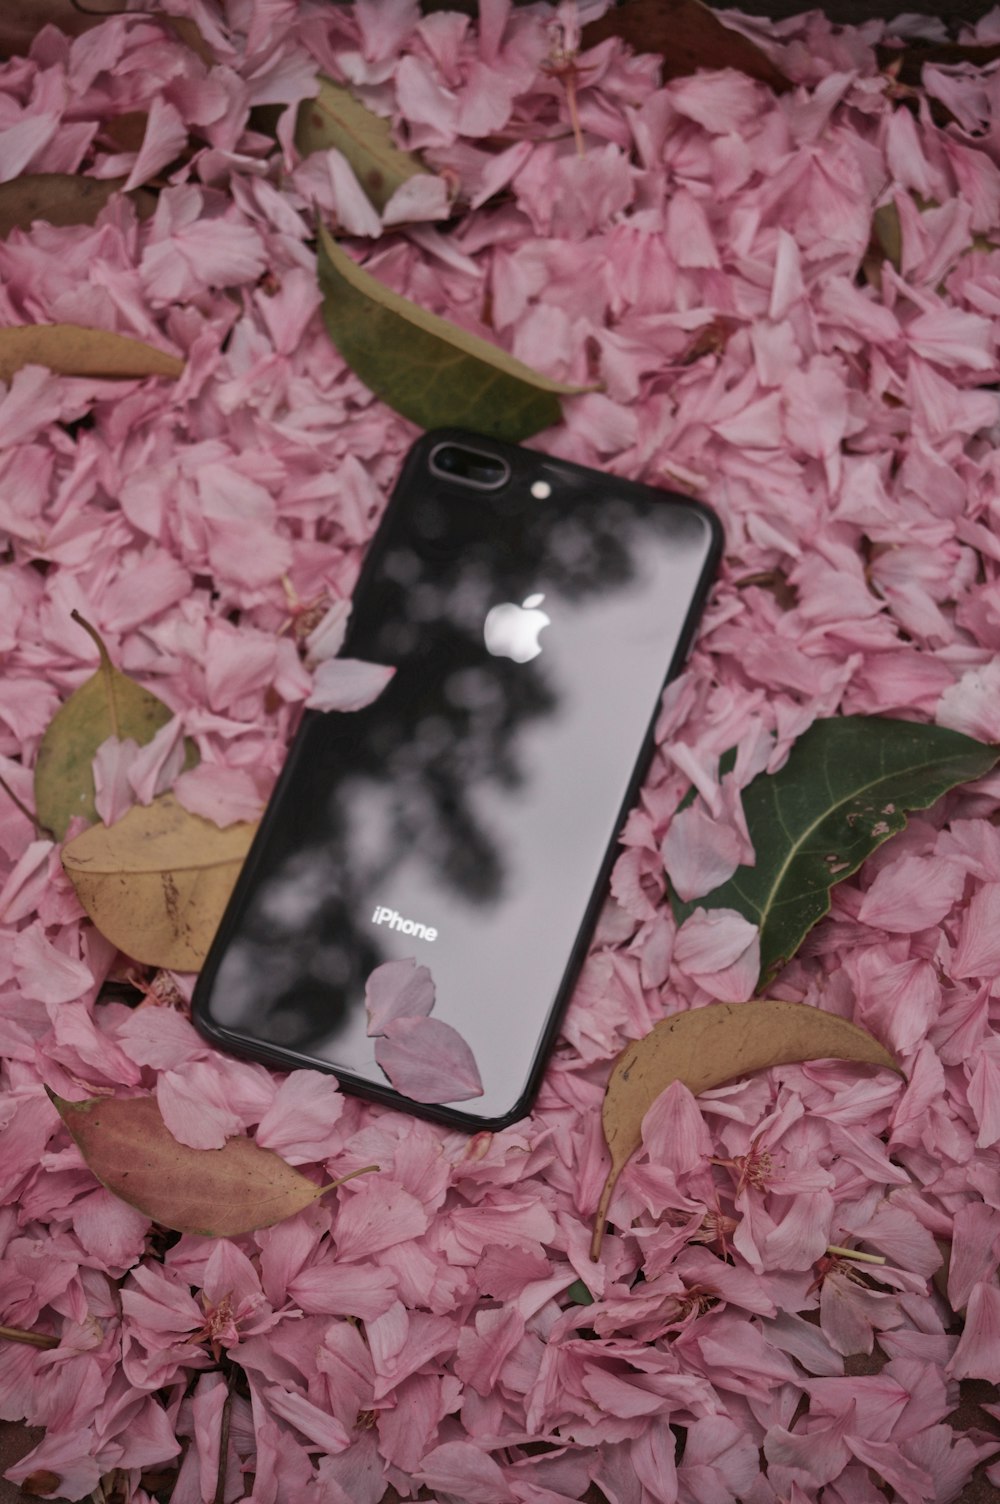 iPhone 6 gris espacial sobre hojas rosas y verdes